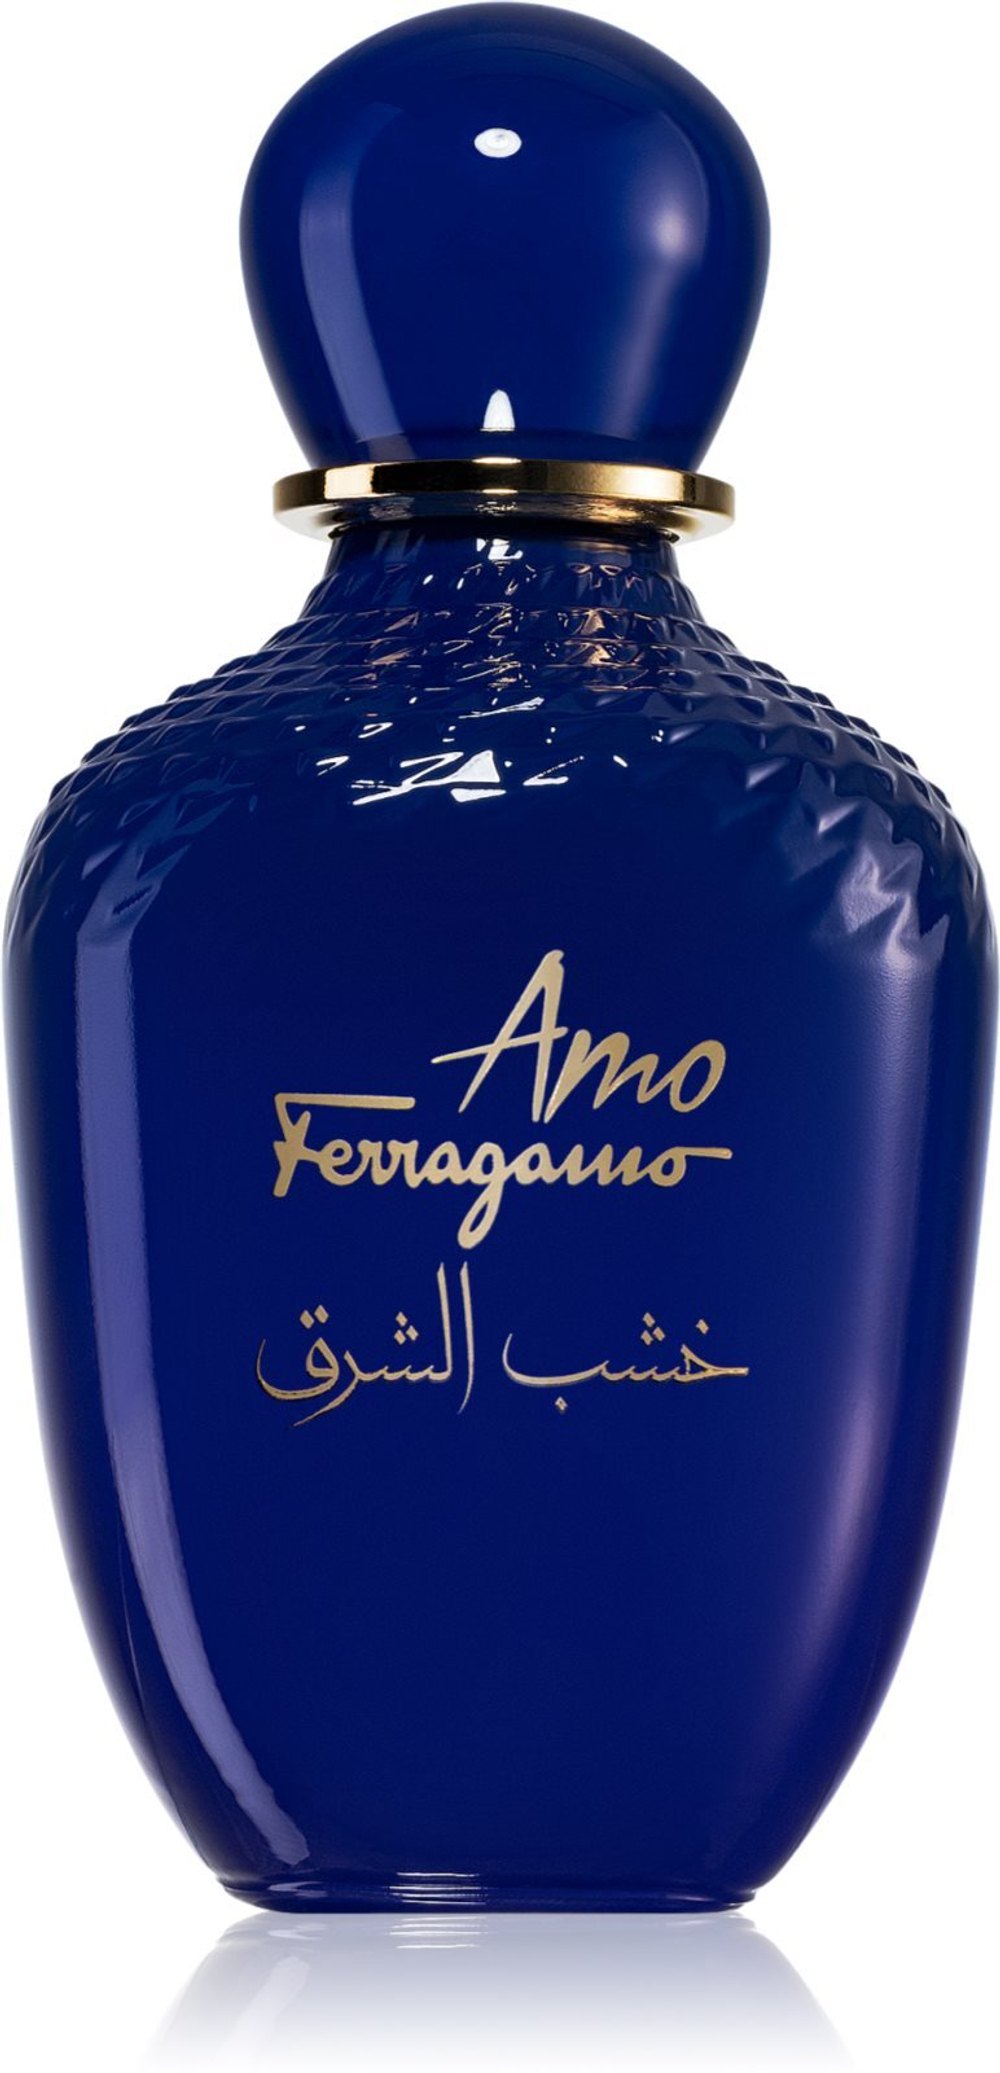 Salvatore Ferragamo парфюмированная вода для в | Oriental Ferragamo купить Москве по Доставка Amo женщин Wood